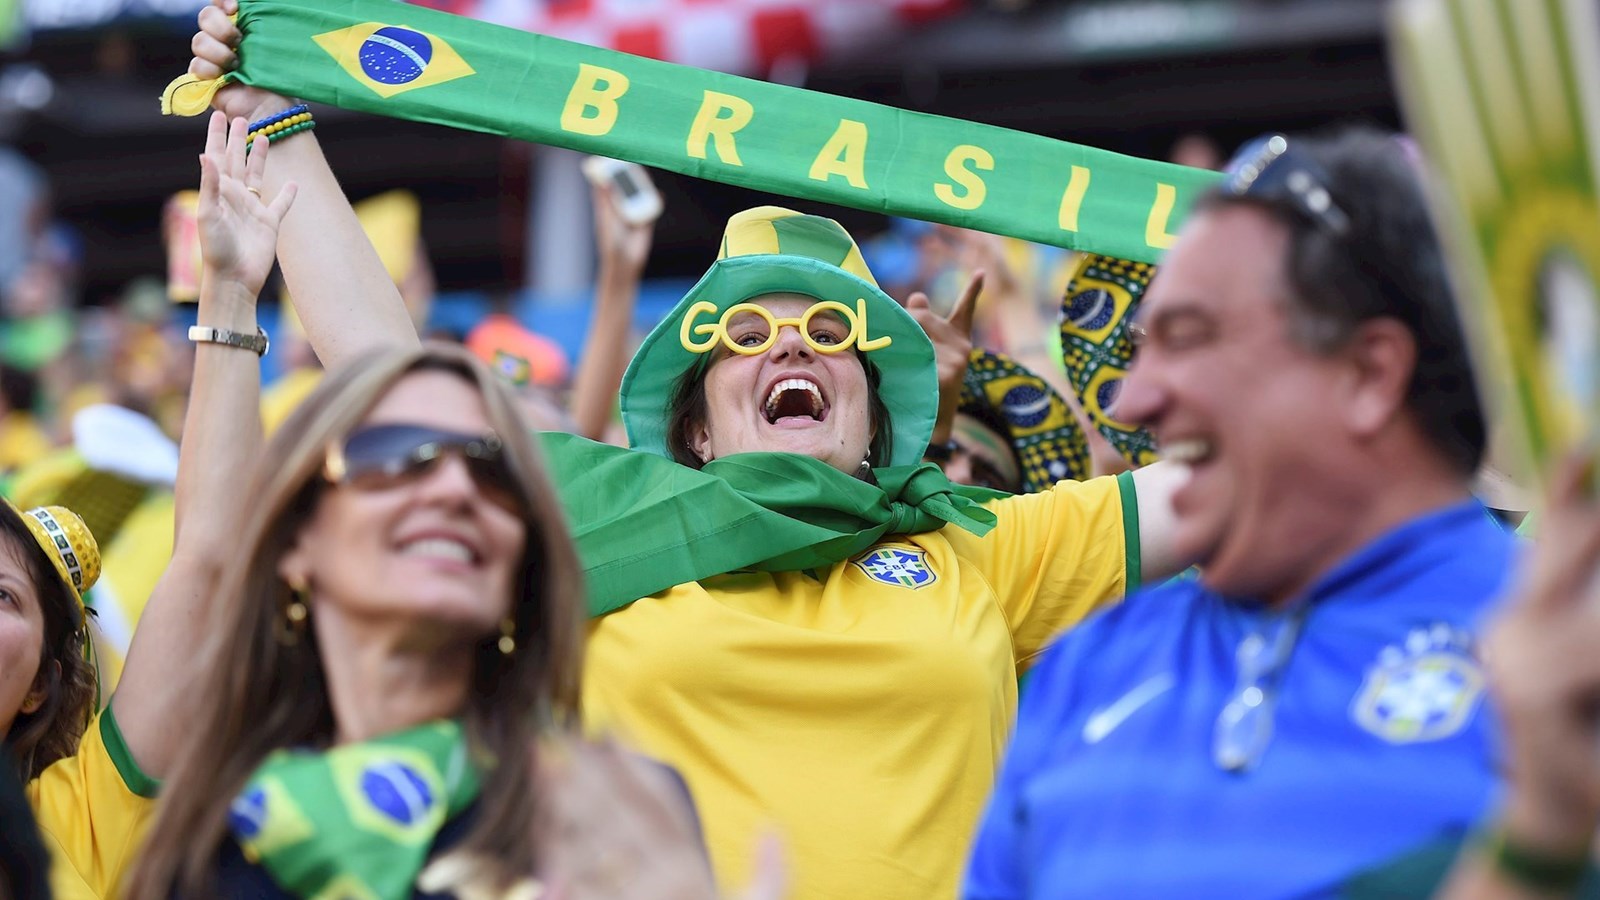 Du kan stadig nå at komme på fodboldrejse til Brasilien